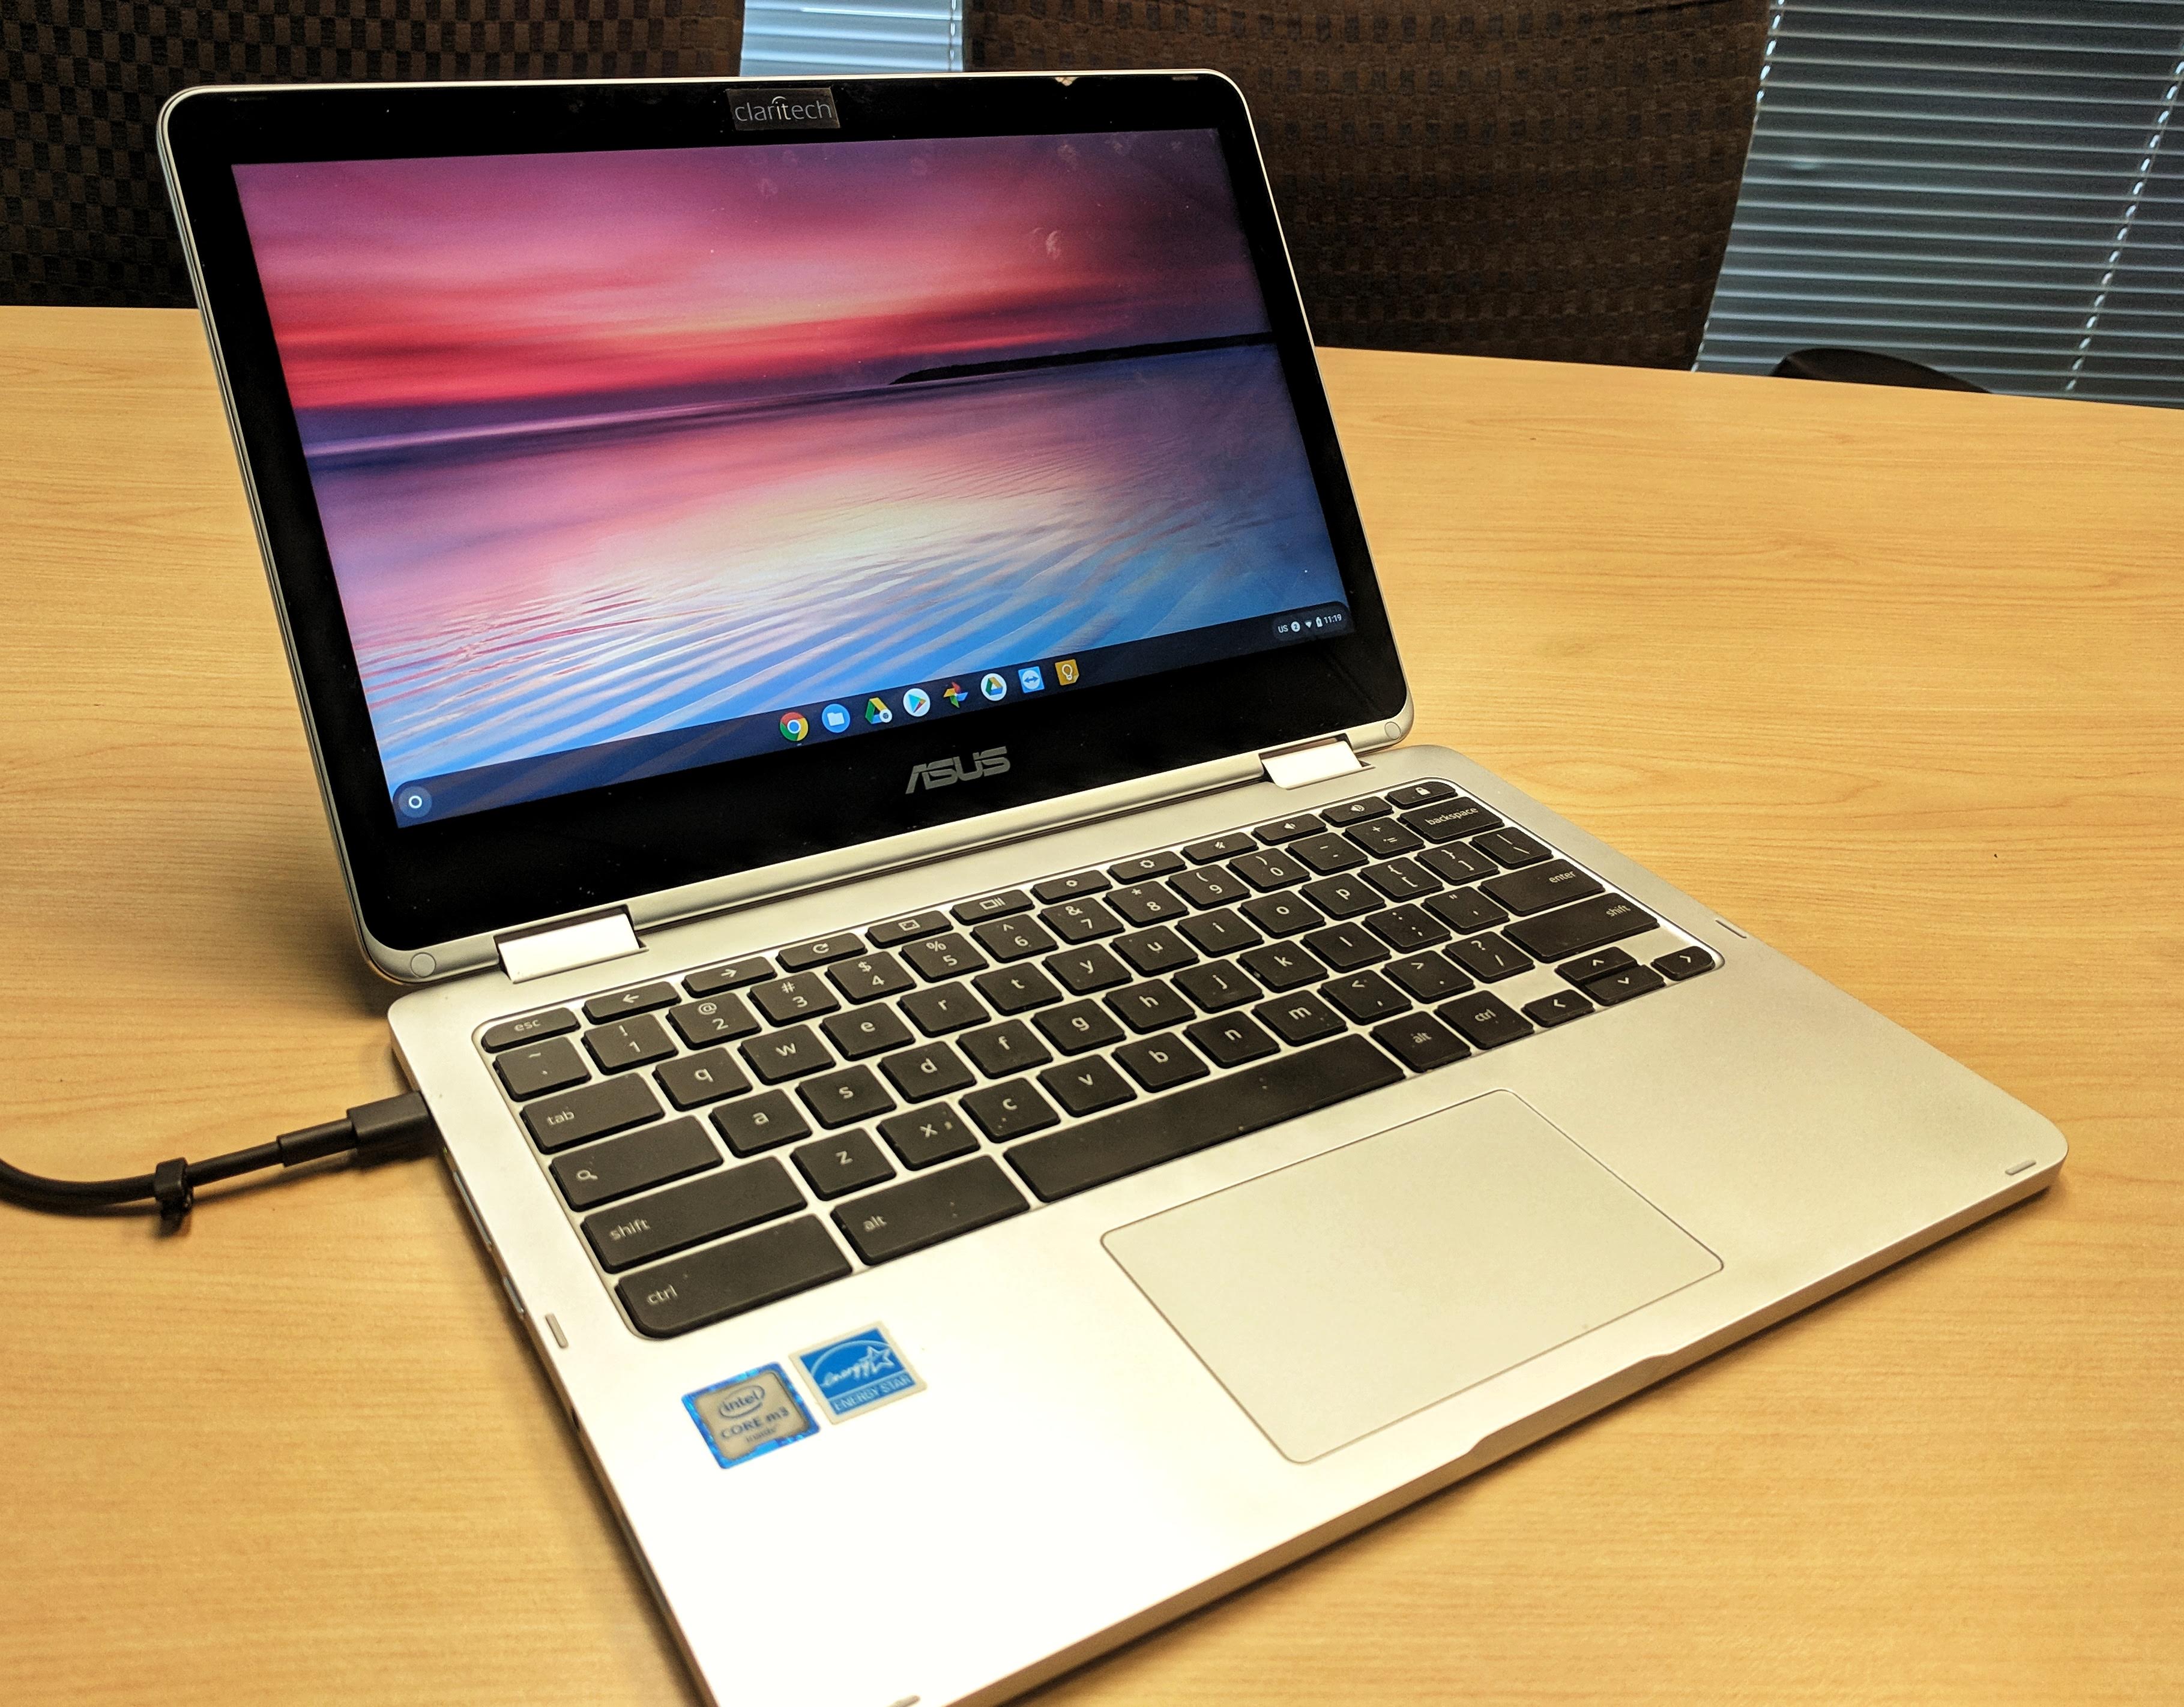 2019 Laptop Comparison – ASUS Chromebook vs Microsoft Surface Go